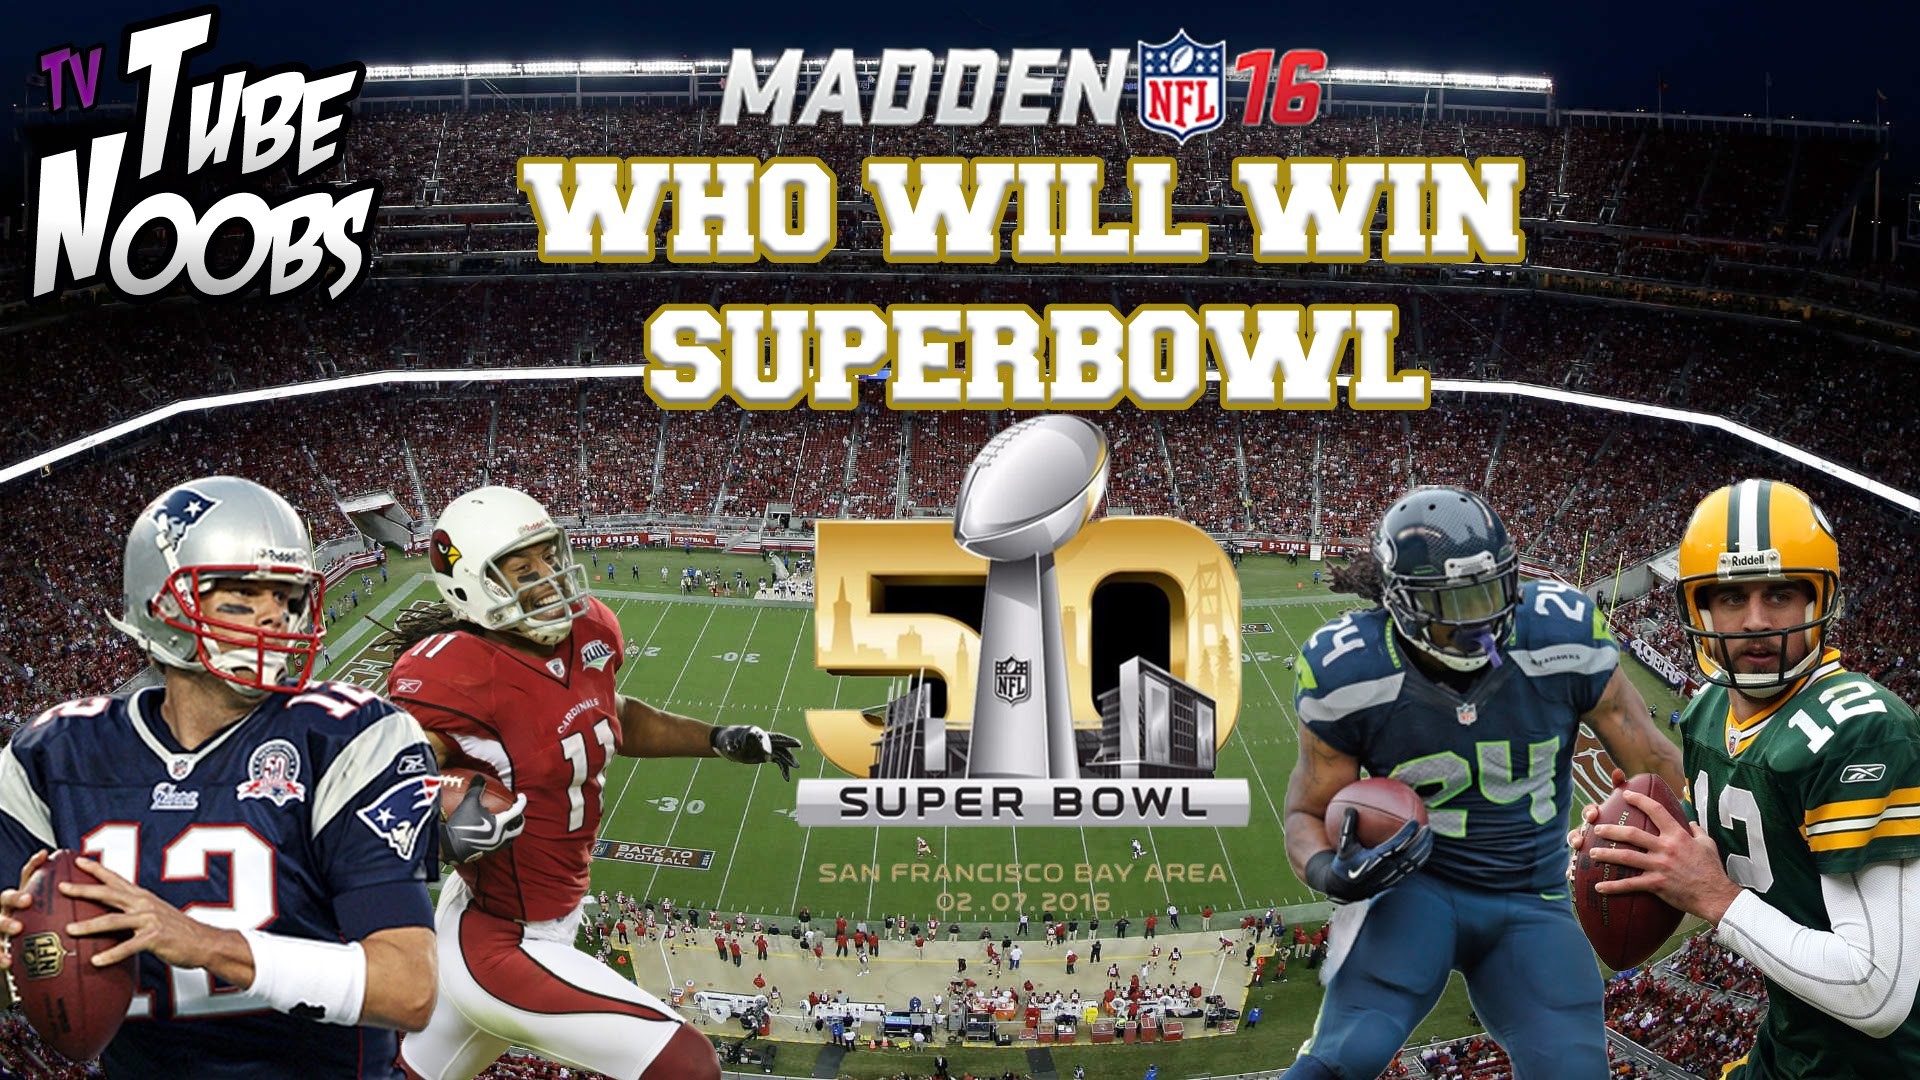 1920x1080 WHO WILL WIN SUPER BOWL 50 - Promo MADDEN 16 - Who will win the Super Bowl  in Madden? - TNTV